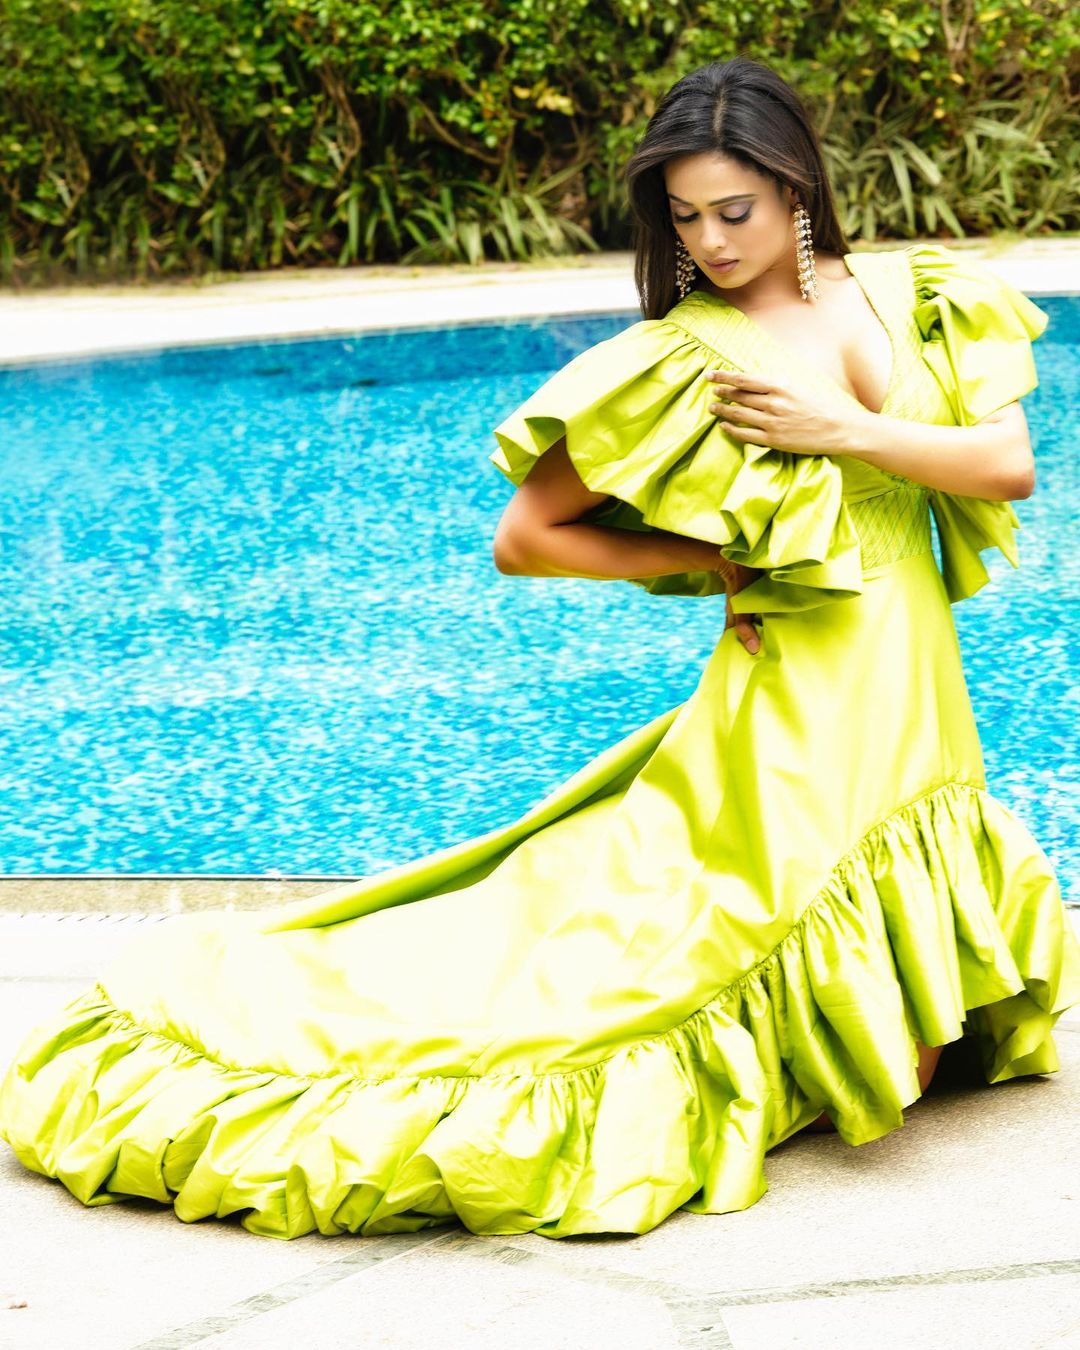 Shweta Tiwari green dress, Shweta Tiwari butterfly, Shweta Tiwari summer fashion, Shweta Tiwari style, Shweta Tiwari butterfly dress,